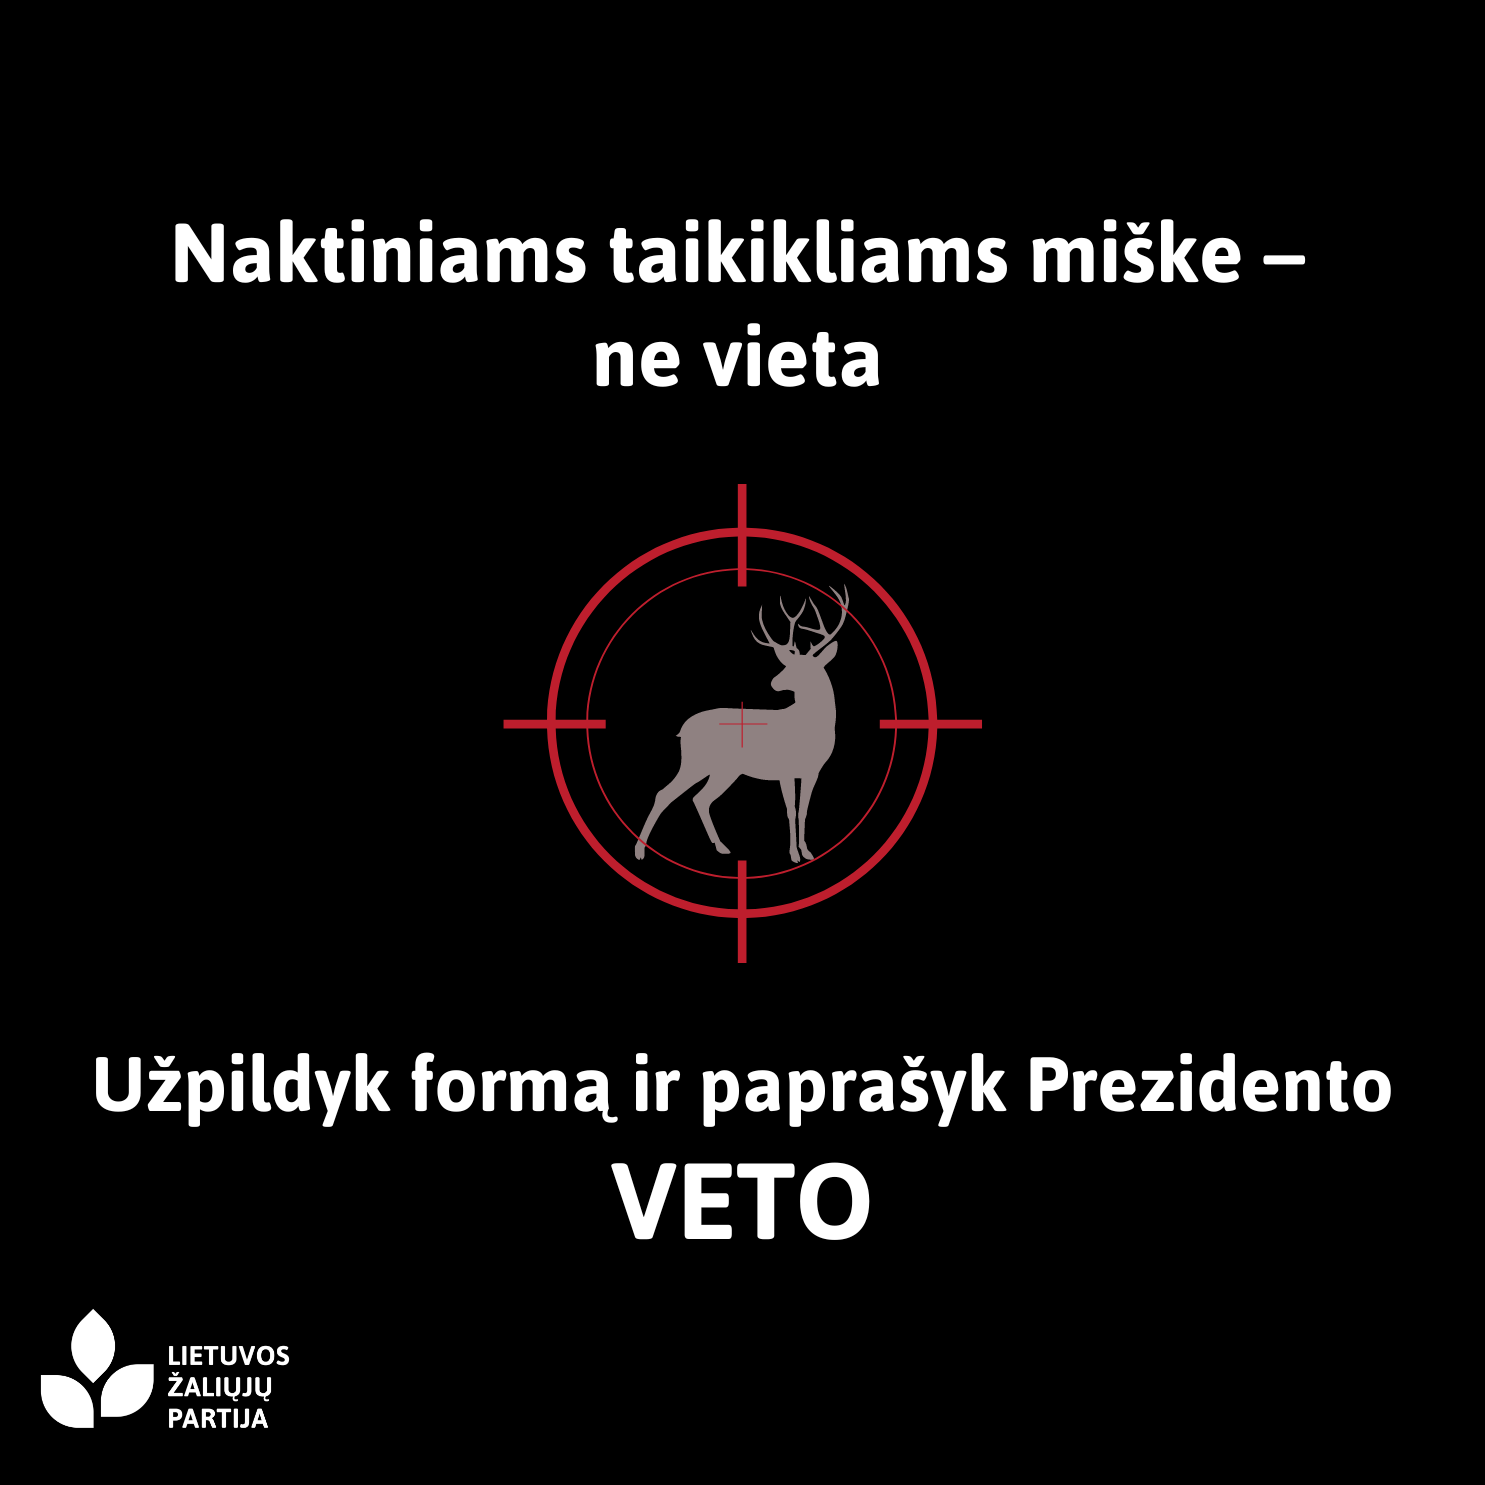 You are currently viewing Seimui įteisinus naktinius taikiklius medžioklėje, žalieji ragina gyventojus prašyti prezidento veto